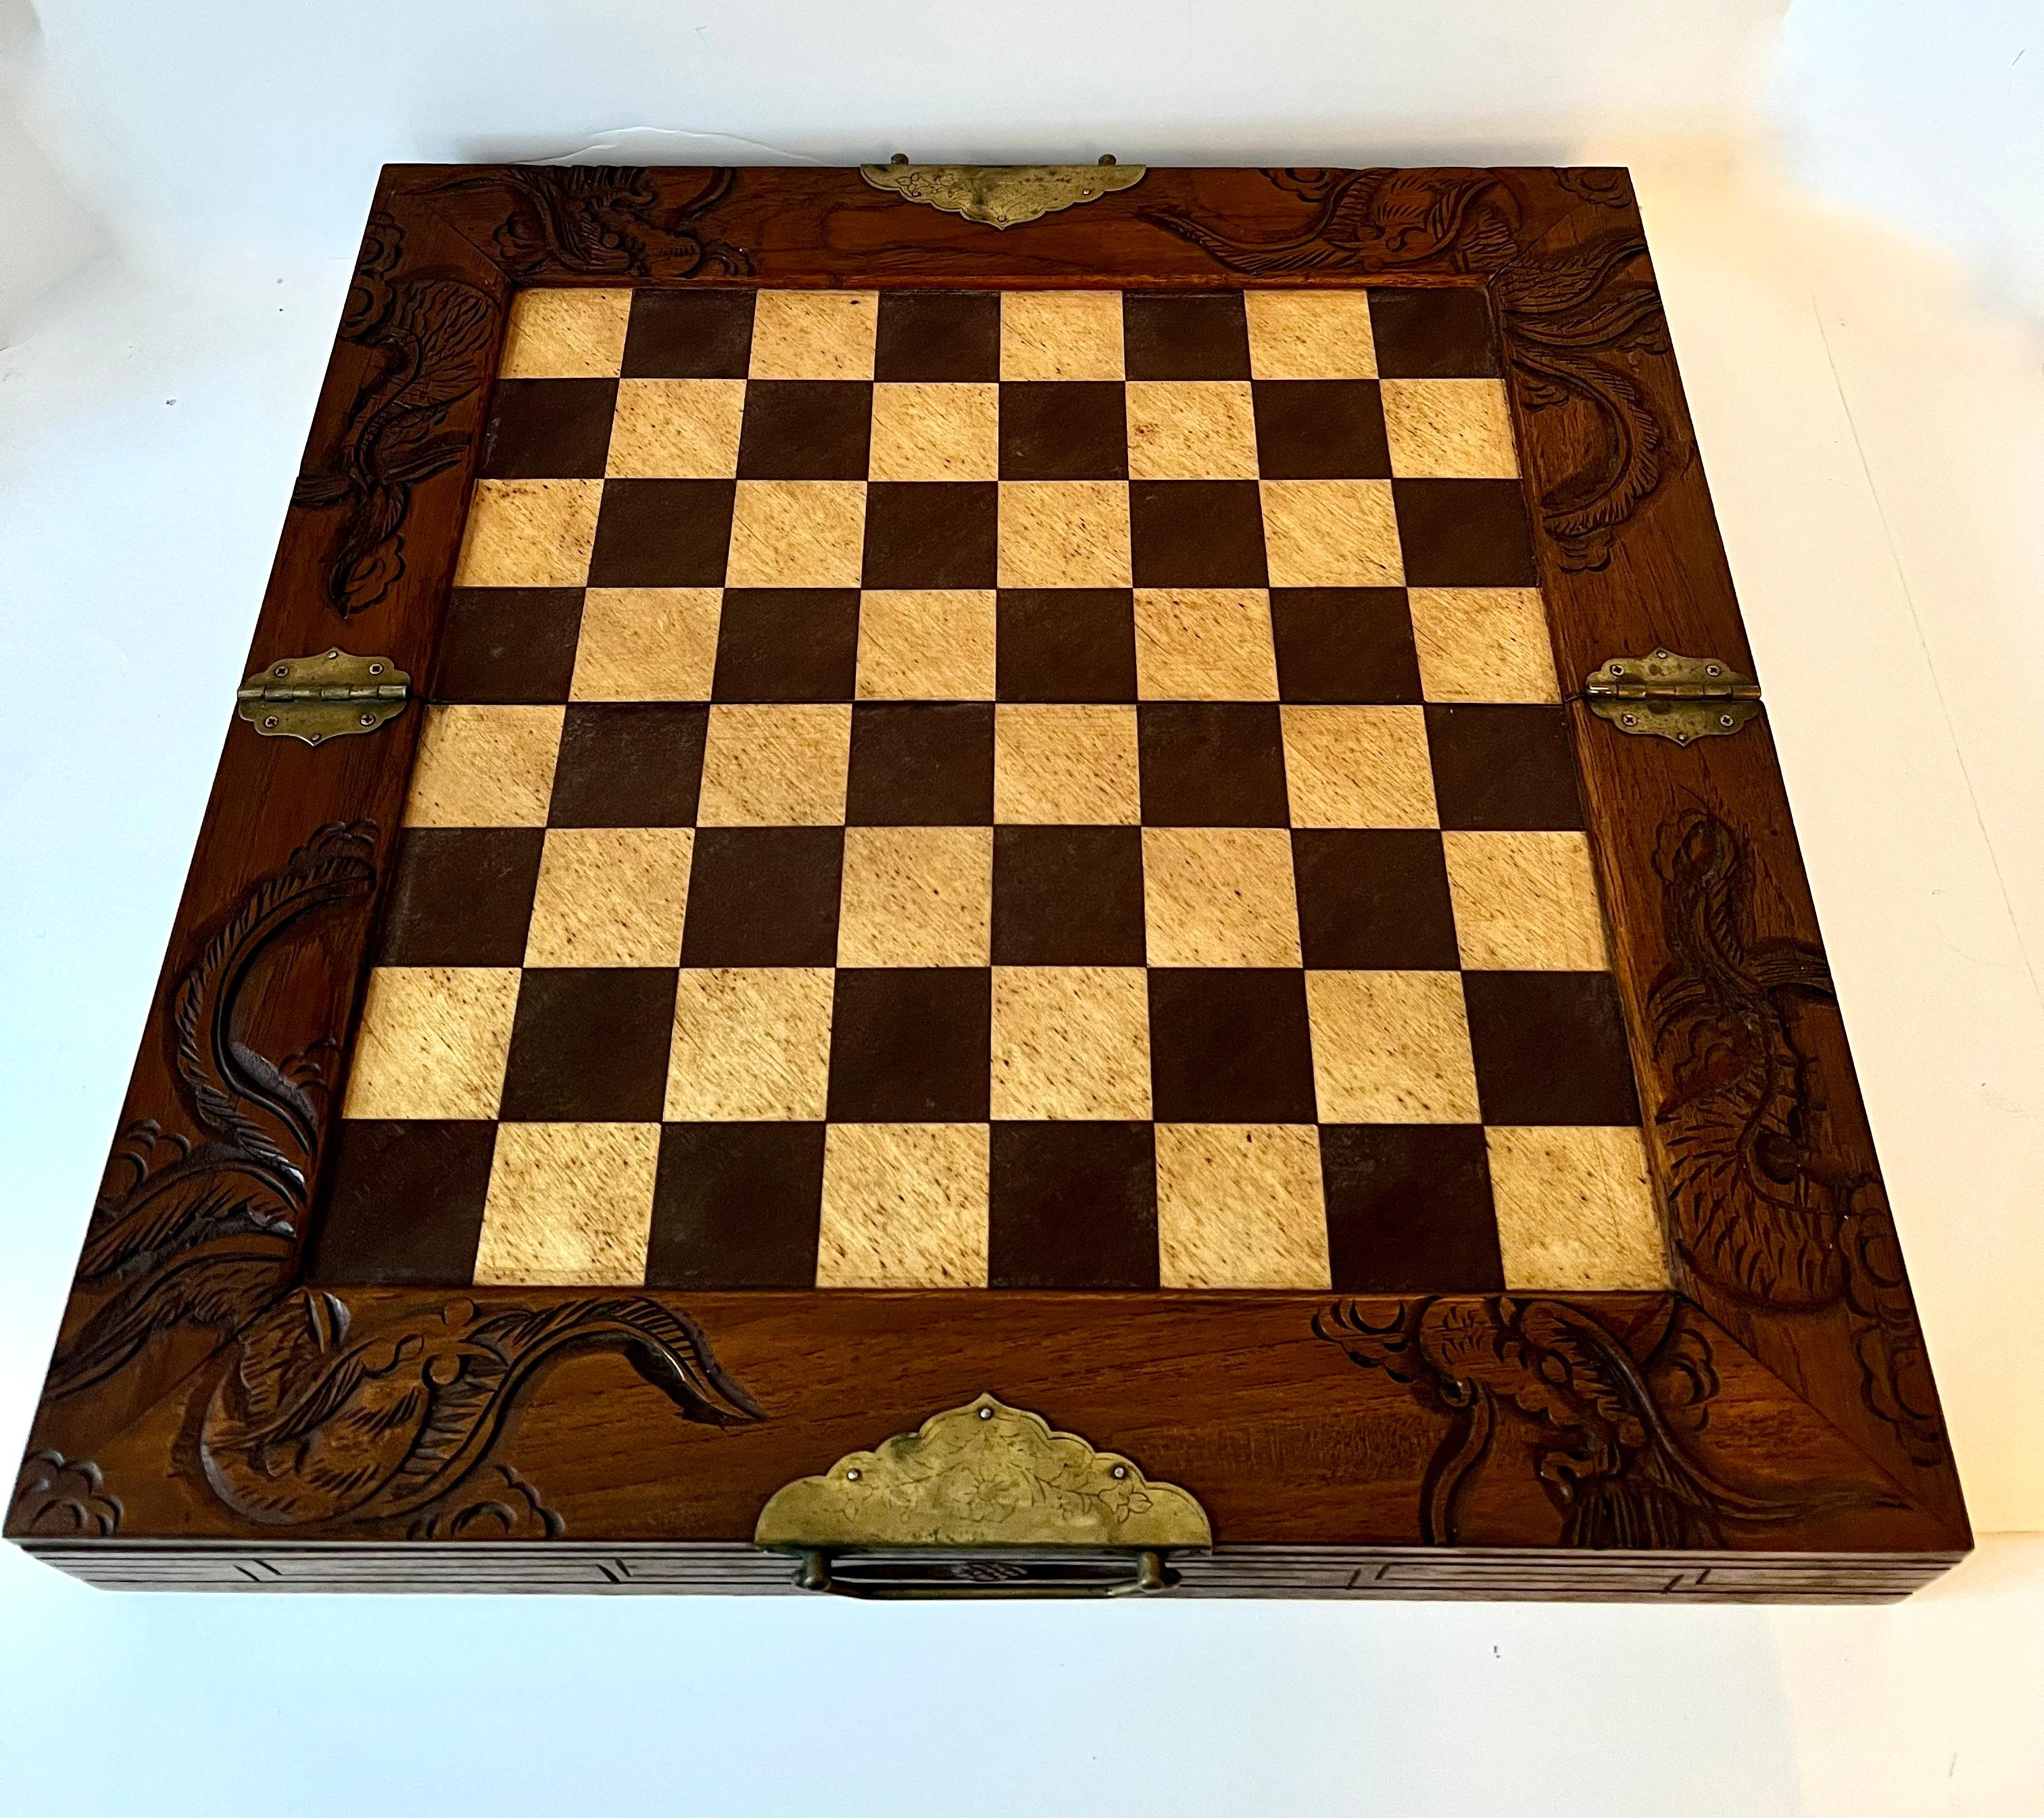 Ein wunderschönes Schachbrett (kann auch für Dame verwendet werden, nicht im Lieferumfang enthalten) mit geschnitzten Drachen am Rand. Es gibt zwei Schubladen, die jede Seite Schachfiguren halten. Das Brett hat eine schöne Patina, jede Schublade hat